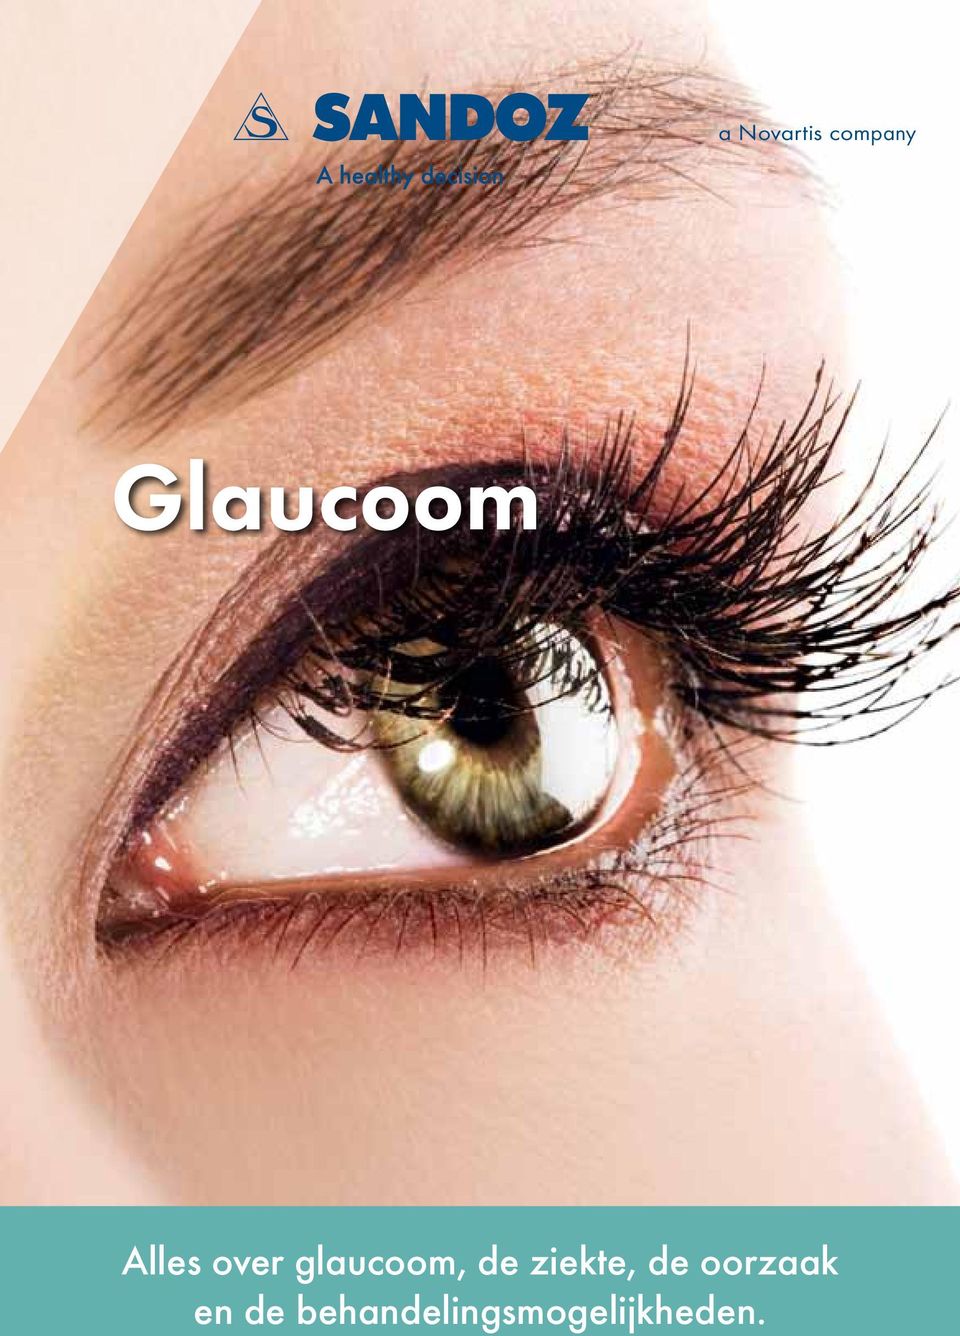 glaucoom, de ziekte, de